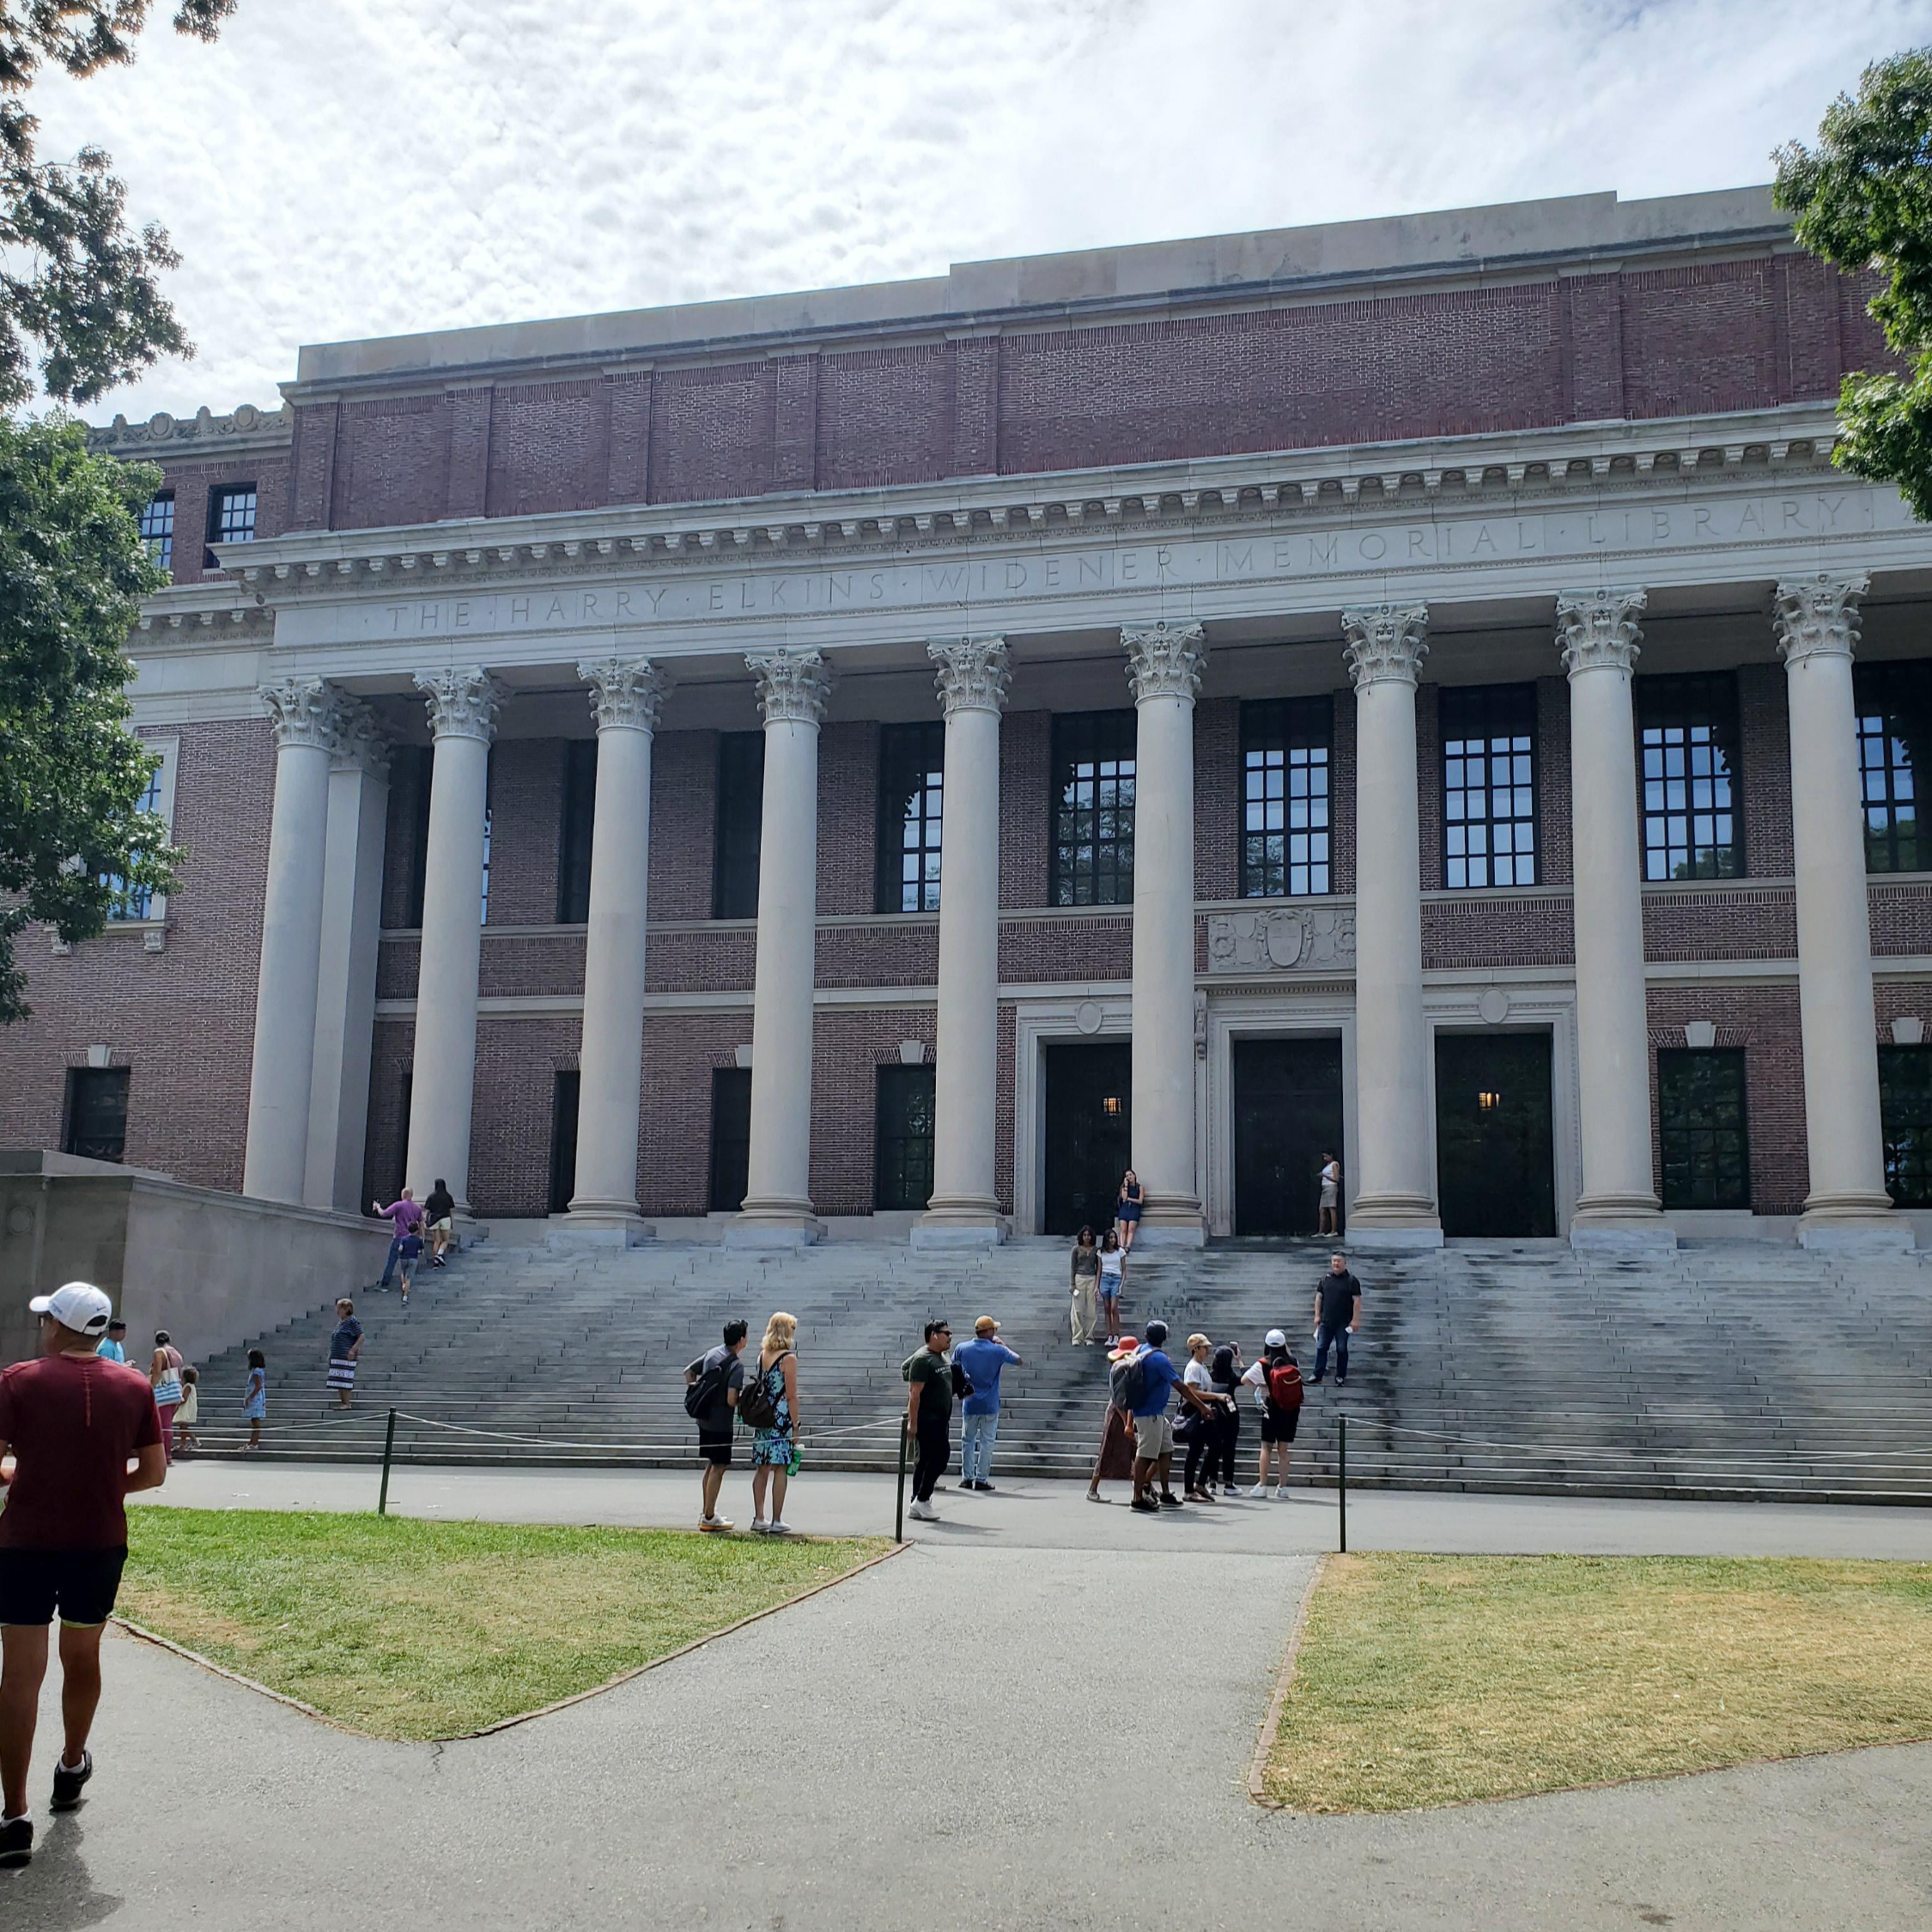 하버드 대학교 도서관 앞에서 찍은 사진. 자주색 벽돌 건물로 기둥들이 여러개 있고 앞에는 여러개의 계단이있습니다.